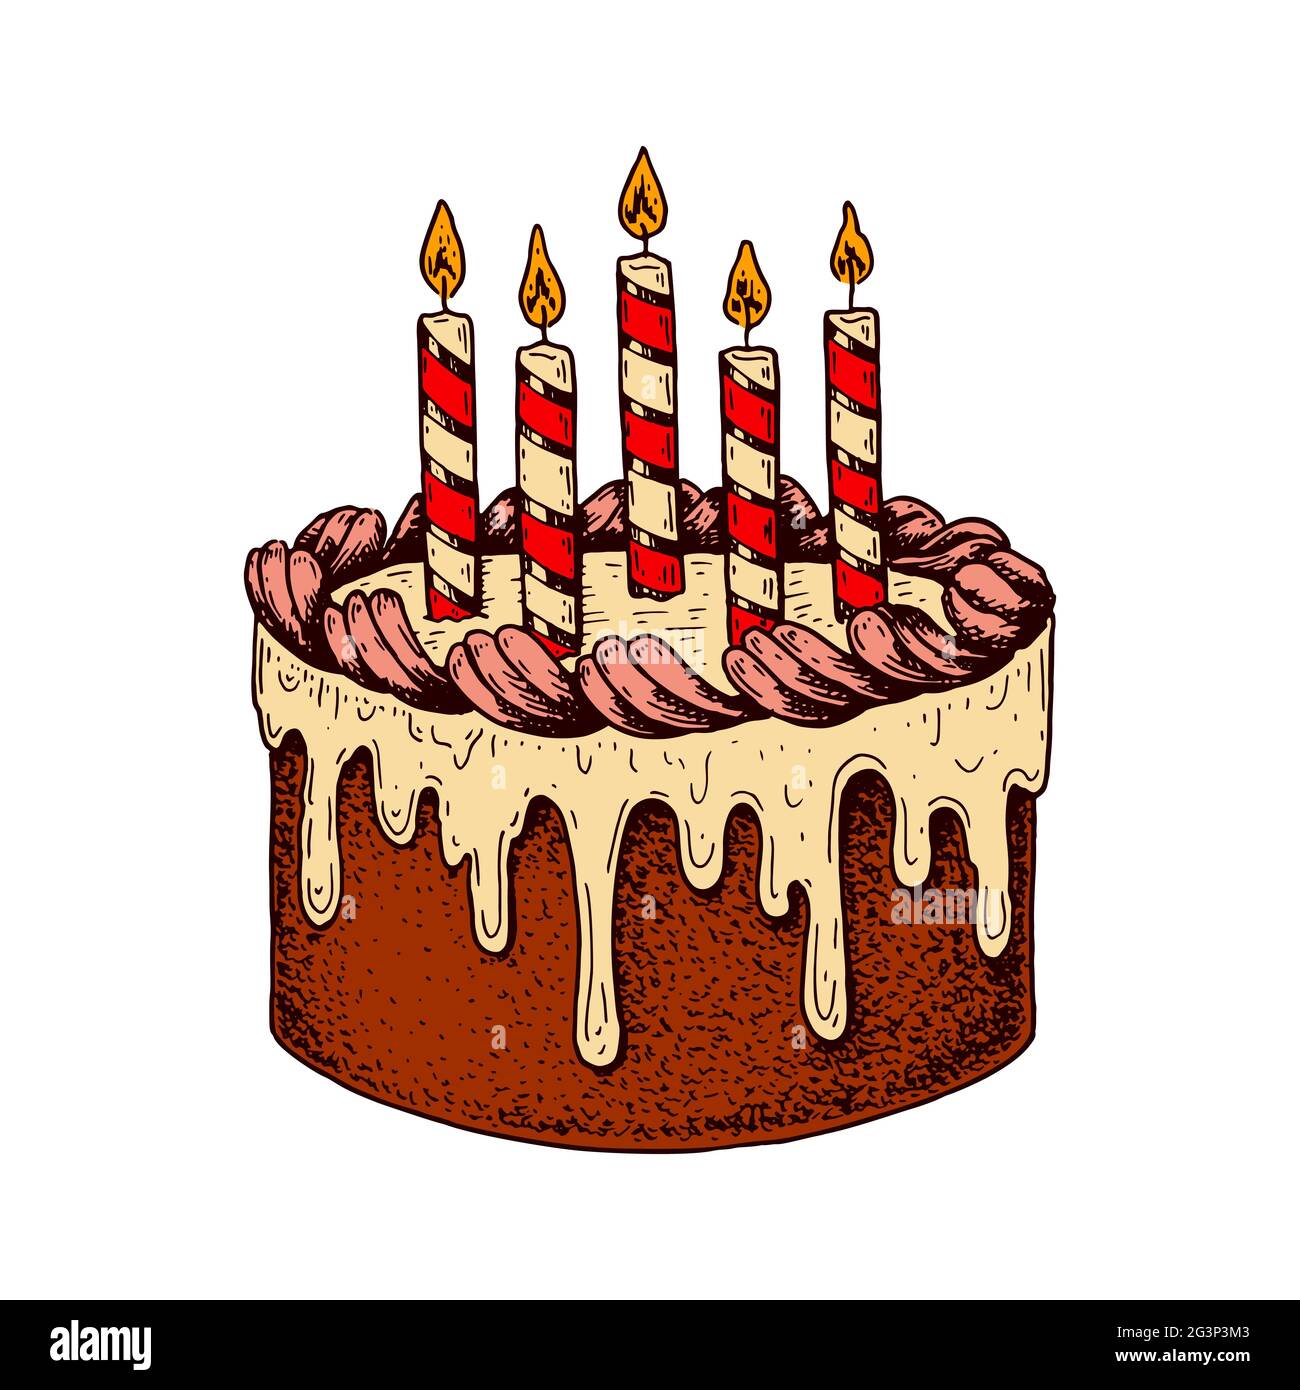 Torta di compleanno con candela colore: Rosa chiaro timbro per biscotti di buon compleanno LissieLou